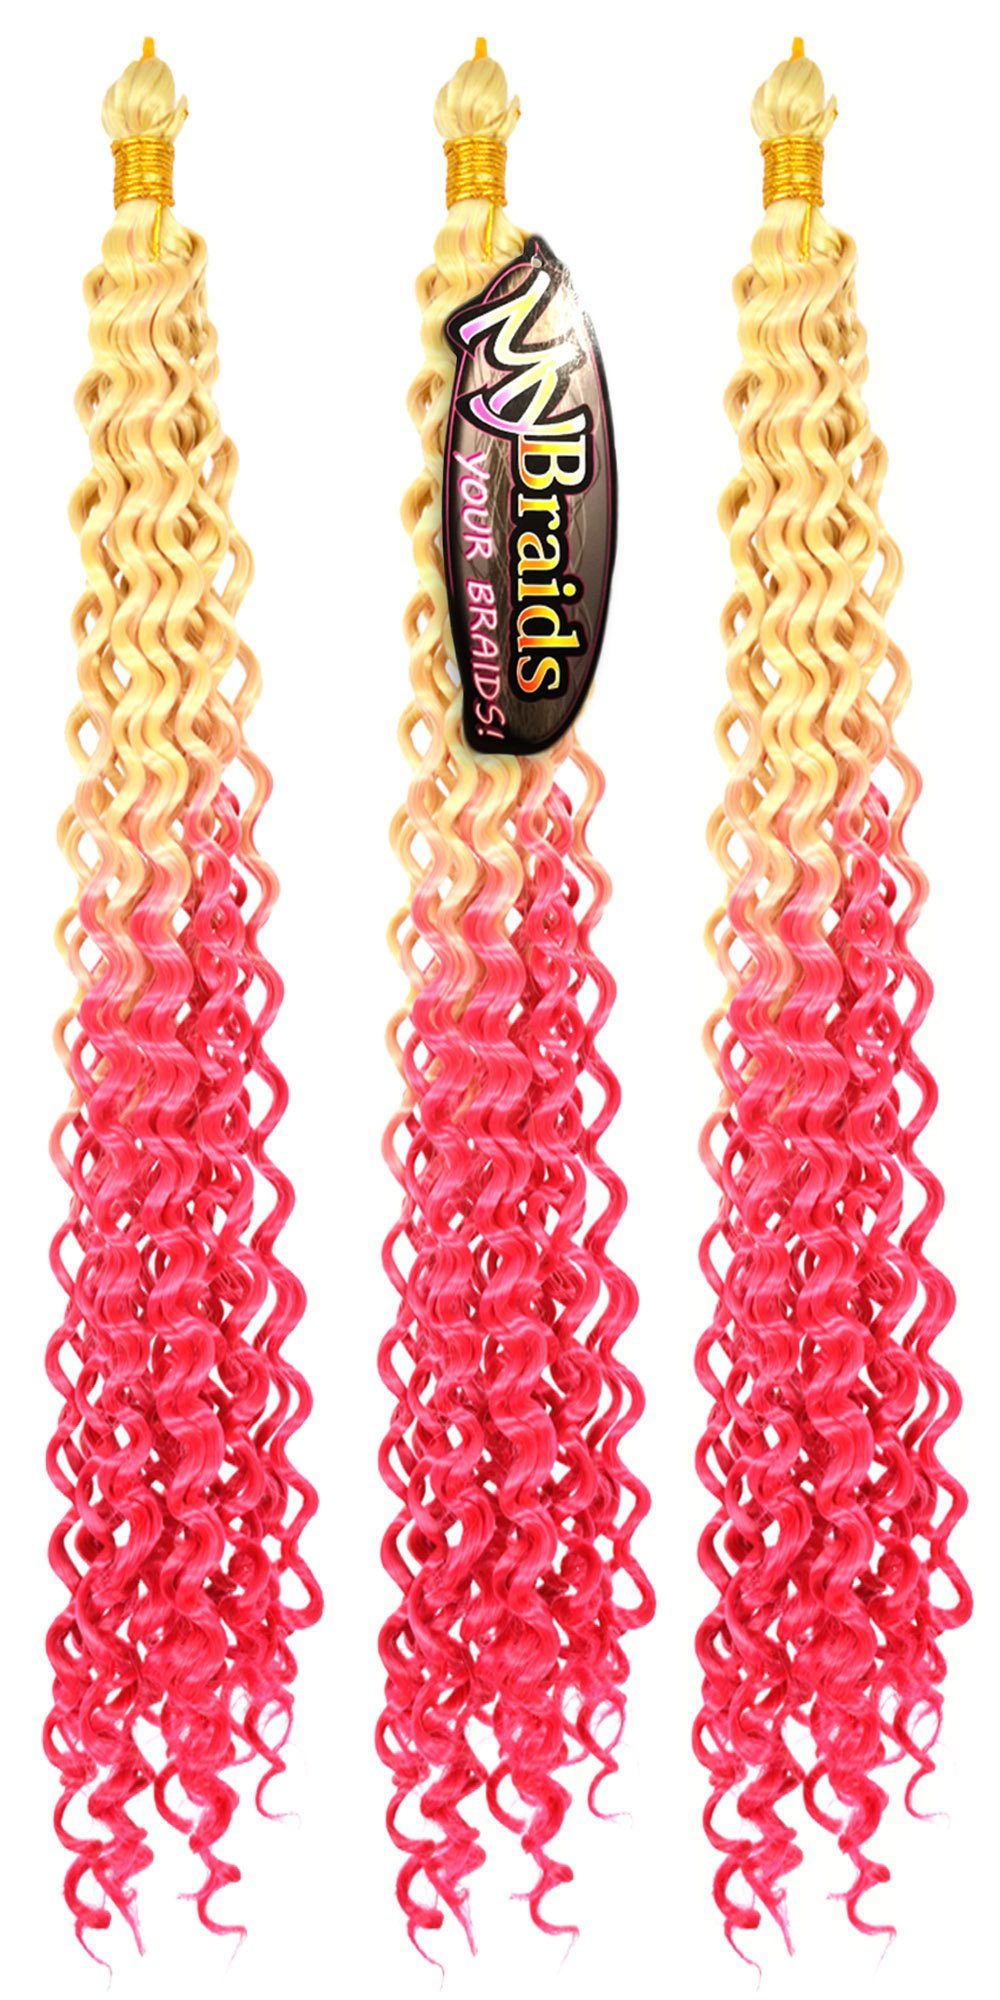 MyBraids YOUR BRAIDS! Kunsthaar-Extension Deep Wave Crochet Braids 3er Pack Flechthaar Ombre Zöpfe Wellig 16-WS Hellblond-Pink